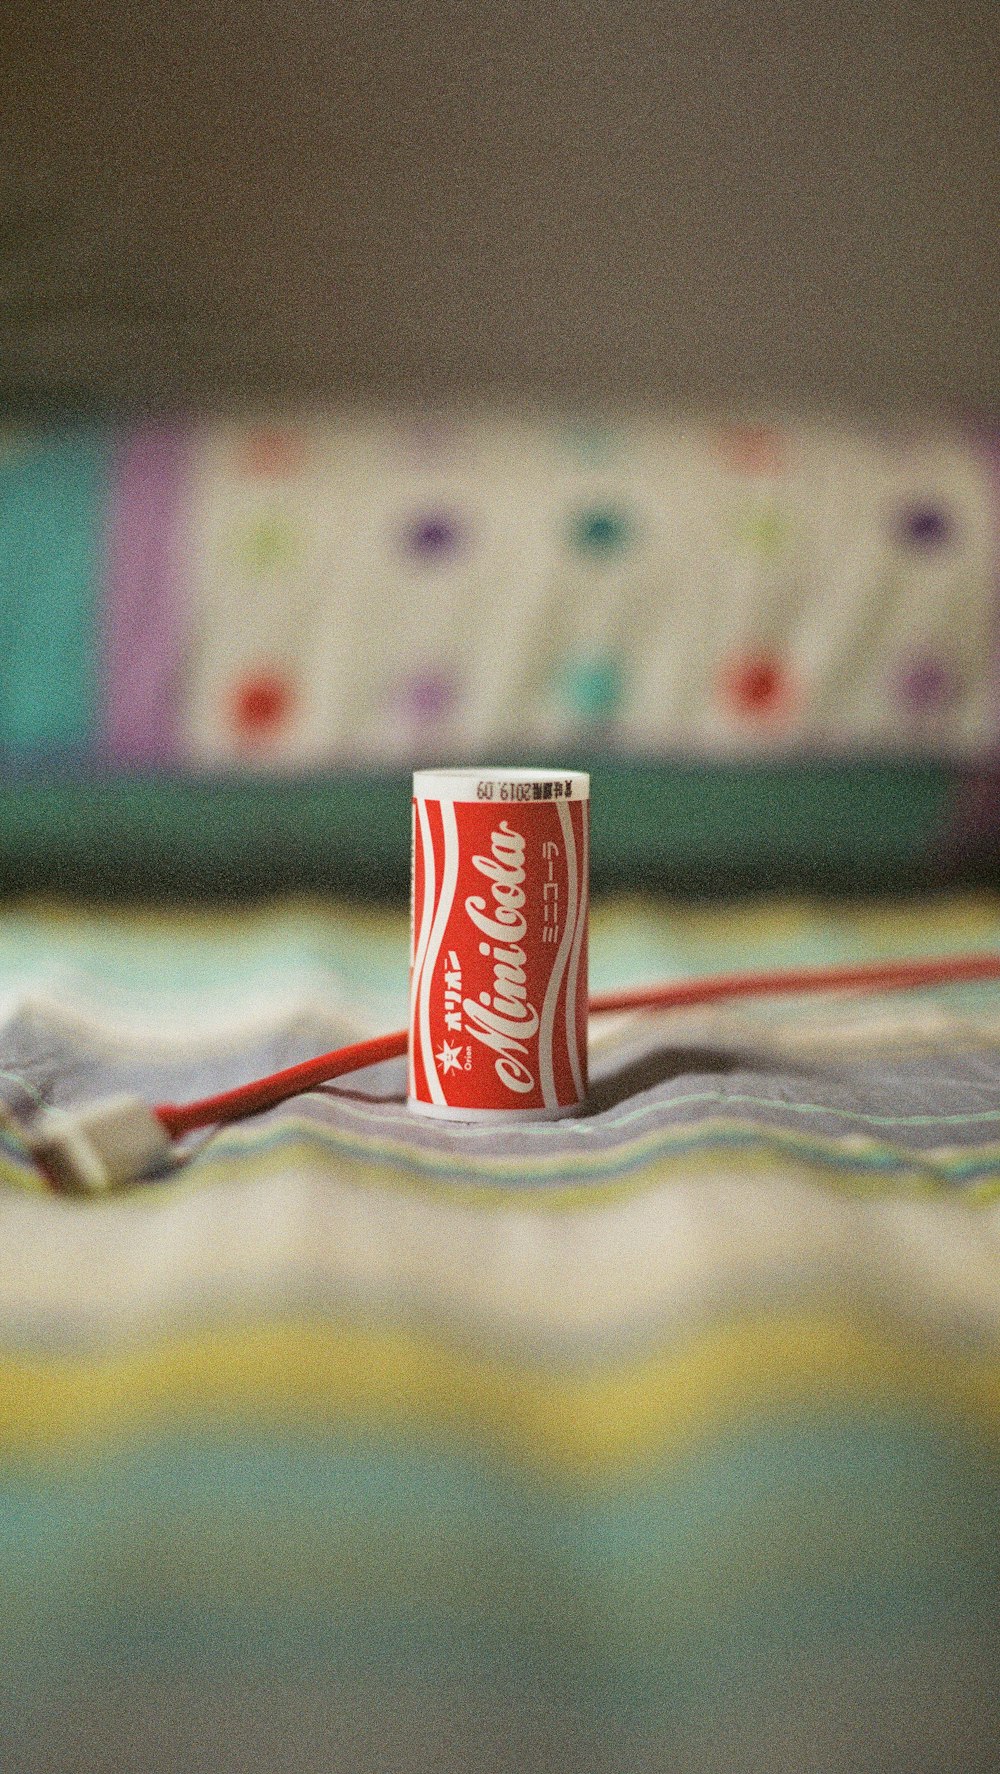 Mini Cola soda can on multicolored textile